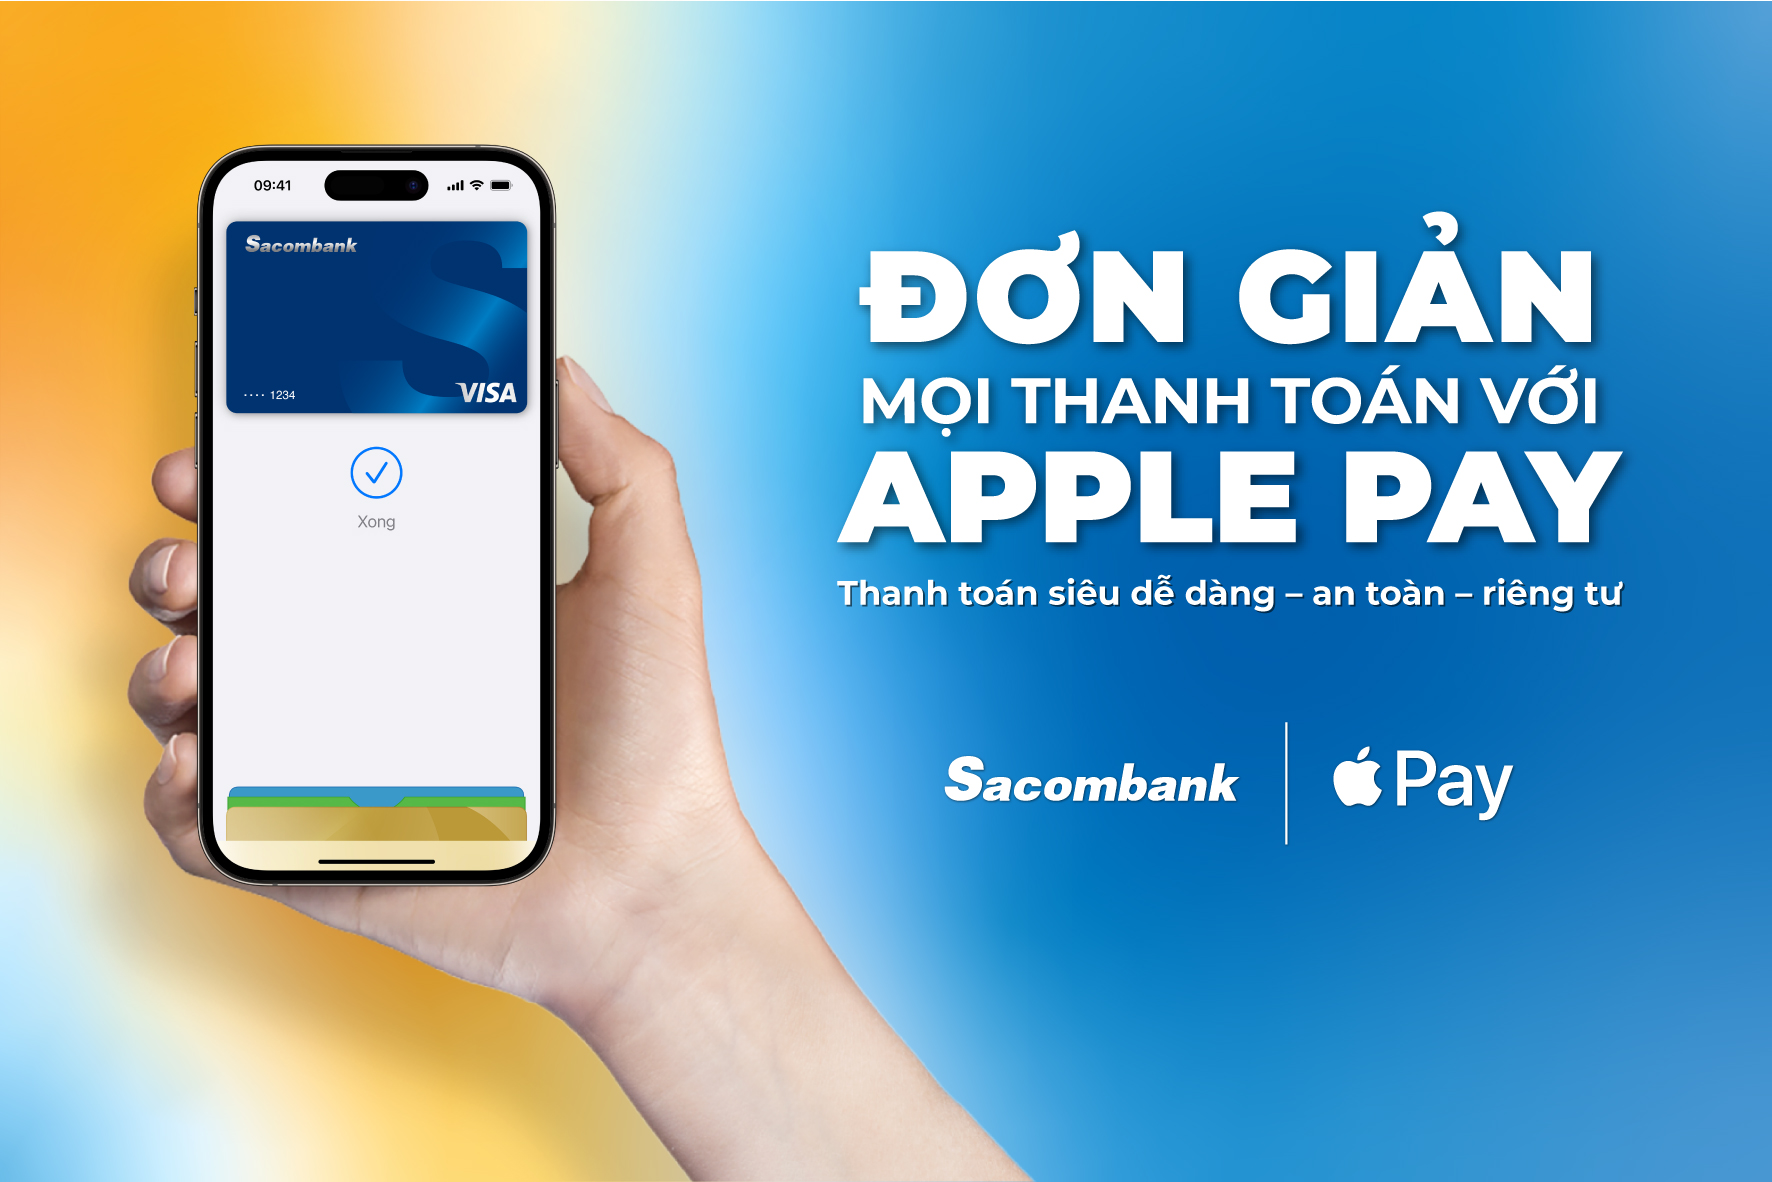 Sacombank giới thiệu Apple Pay: Một phương thức thanh toán dễ dàng, an toàn và riêng tư với iPhone, Apple Watch, iPad và Ma